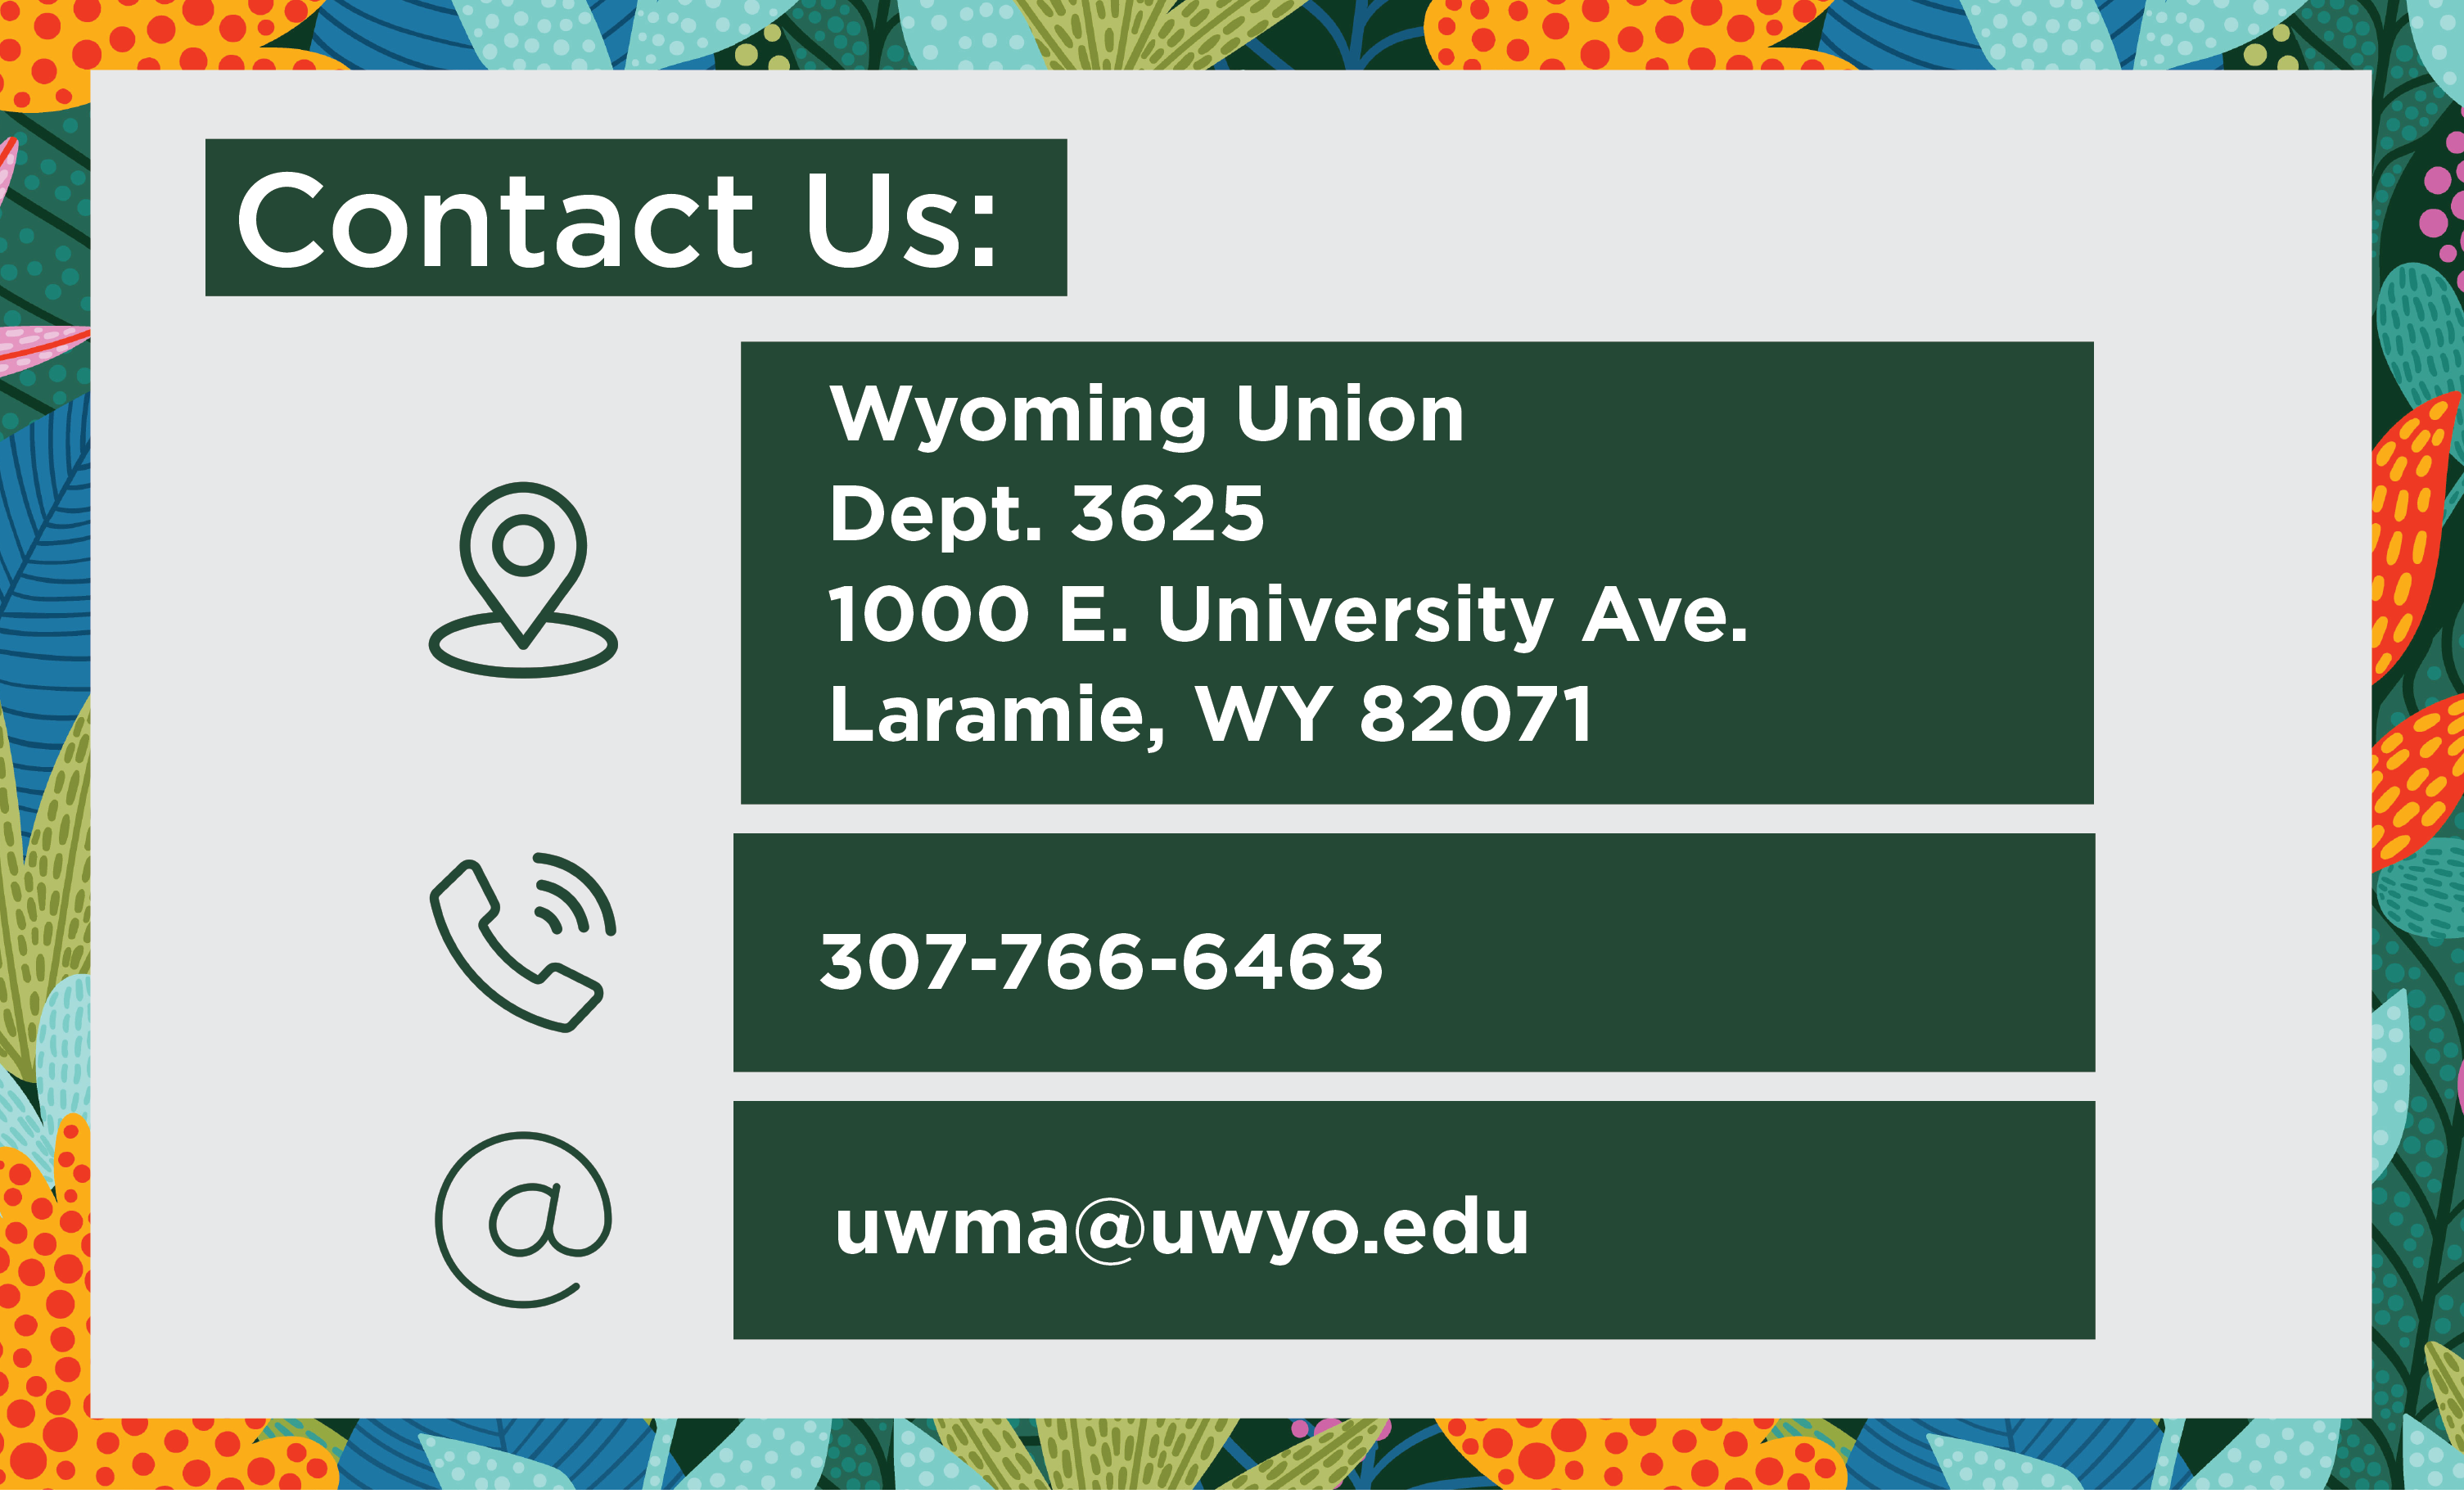 Contact Us: Wyoming Union Dept 3625 1000 E University Ave Laramie, WY 82071 Phone: 307-766-6463 Email uwma@uwyo.edu